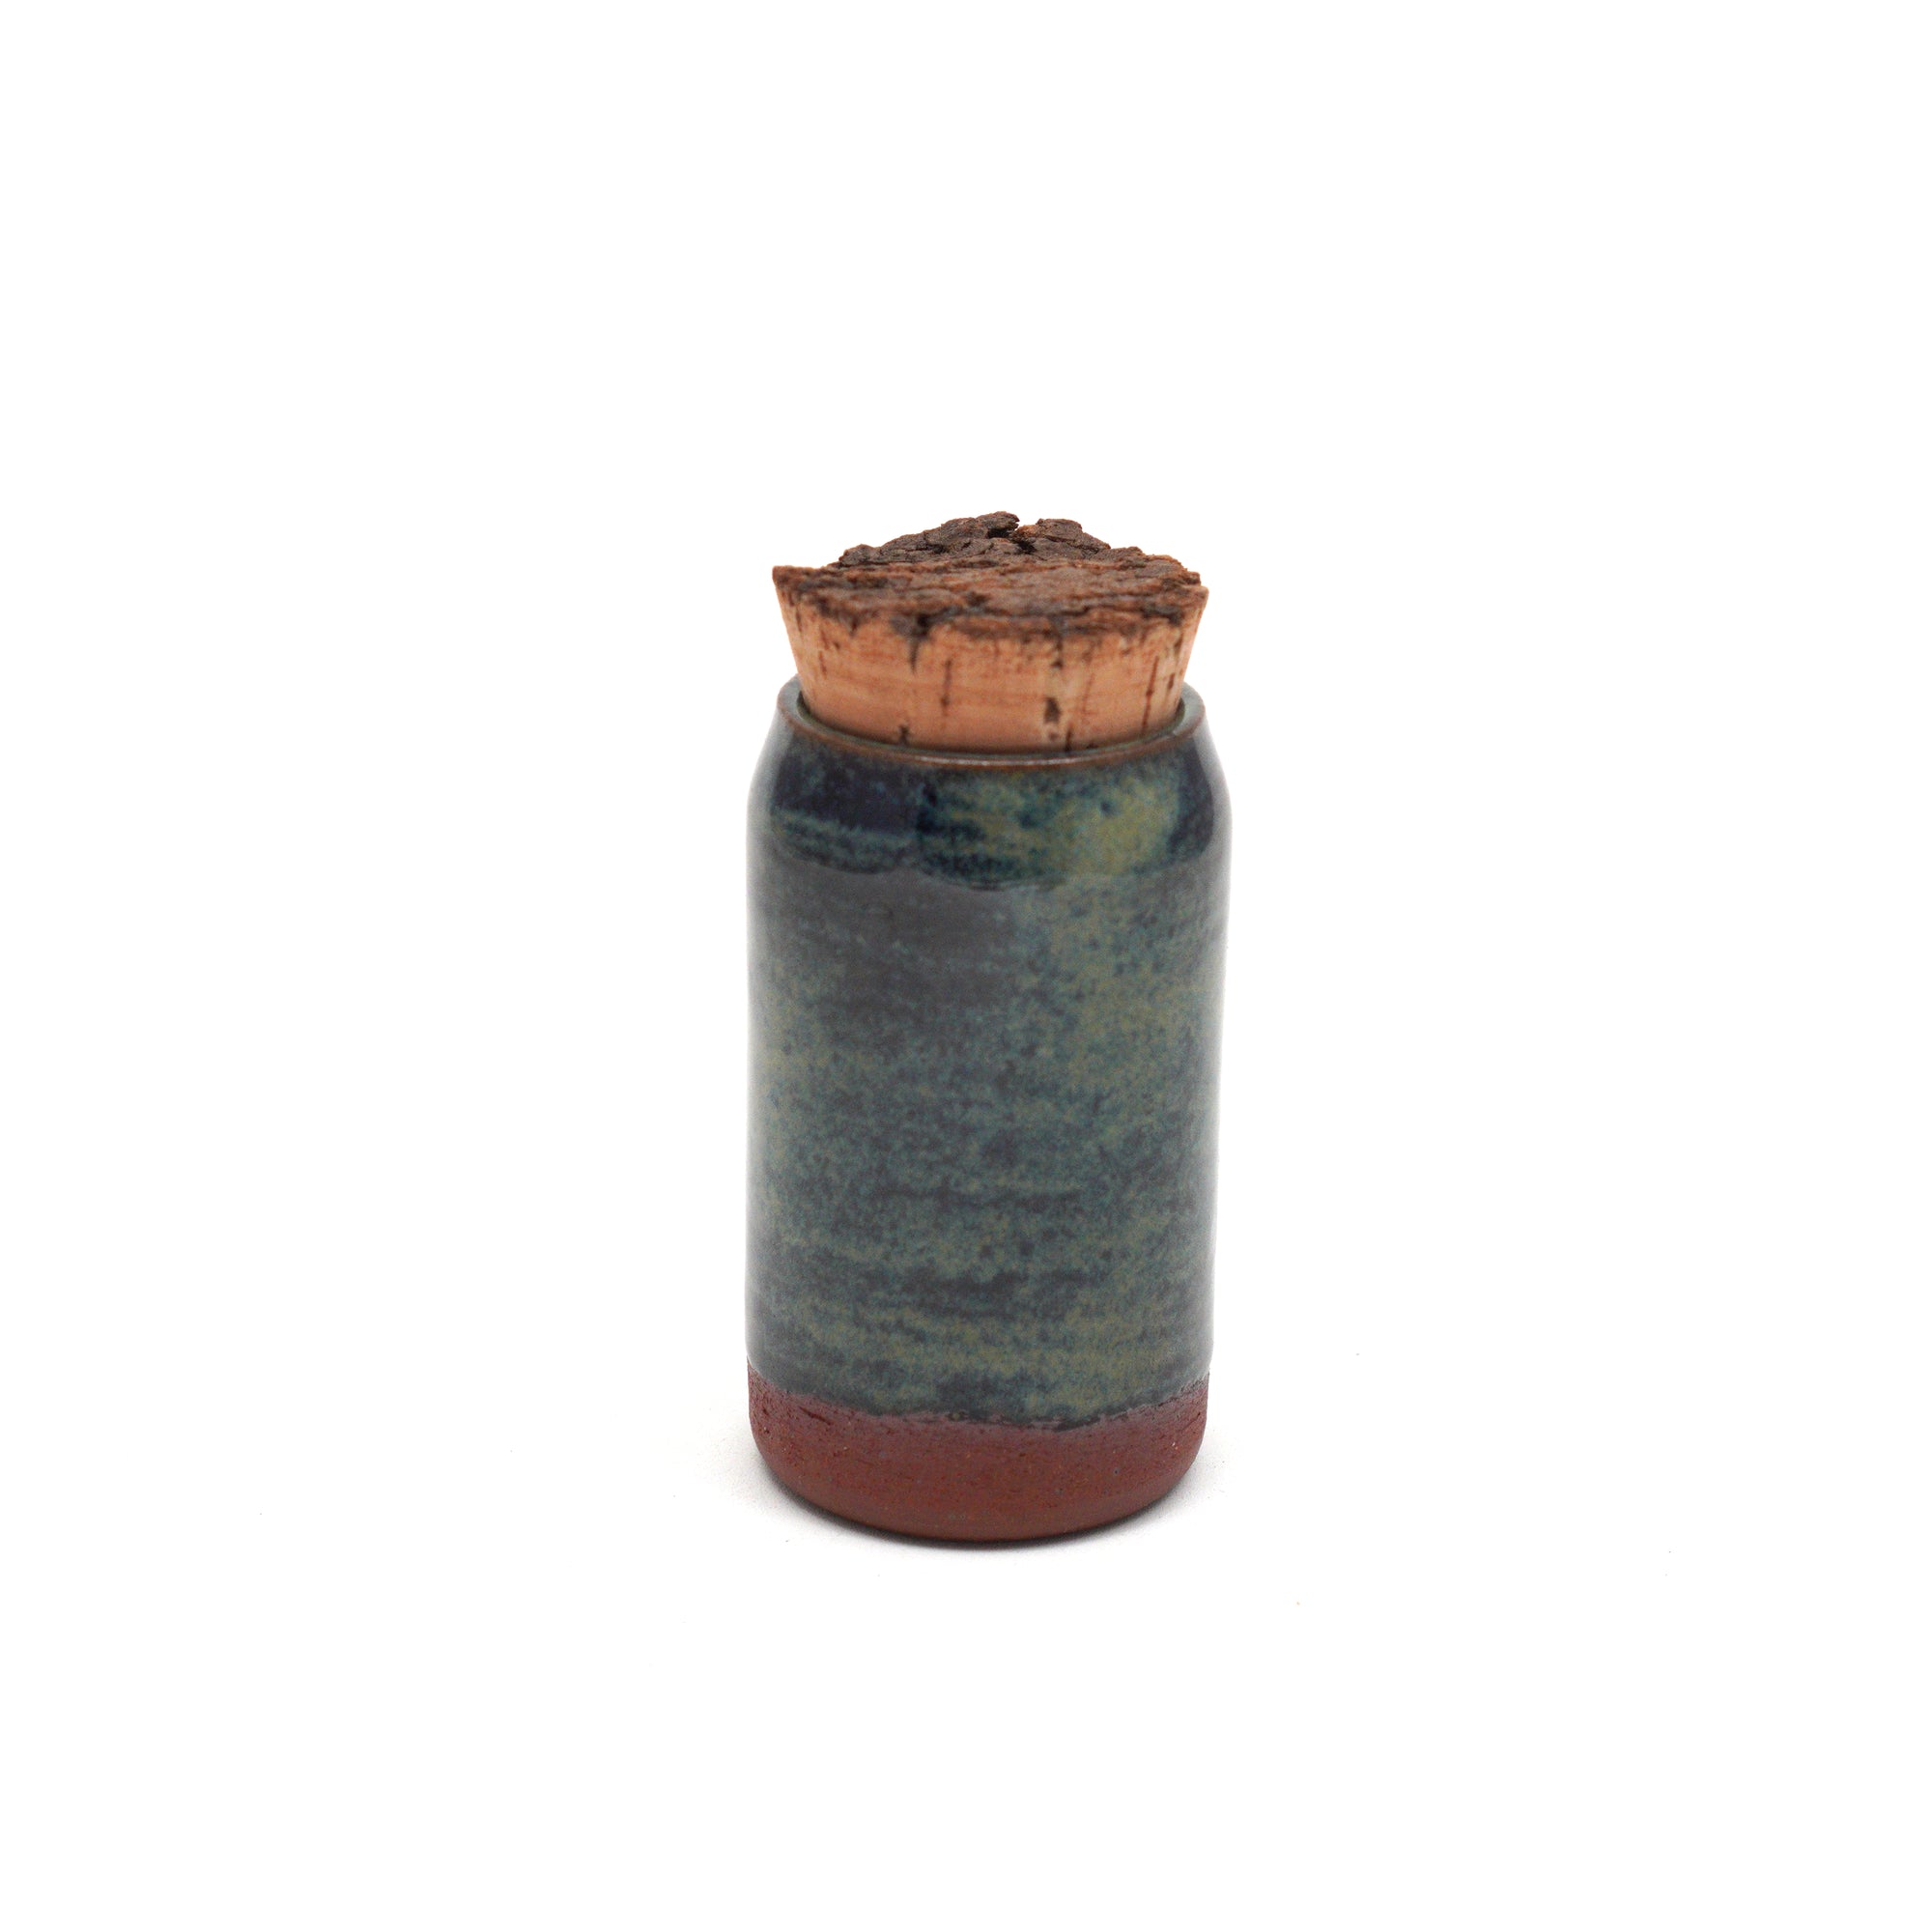 Handmade Ceramic 6oz Corked Jar with green & navy blue glaze